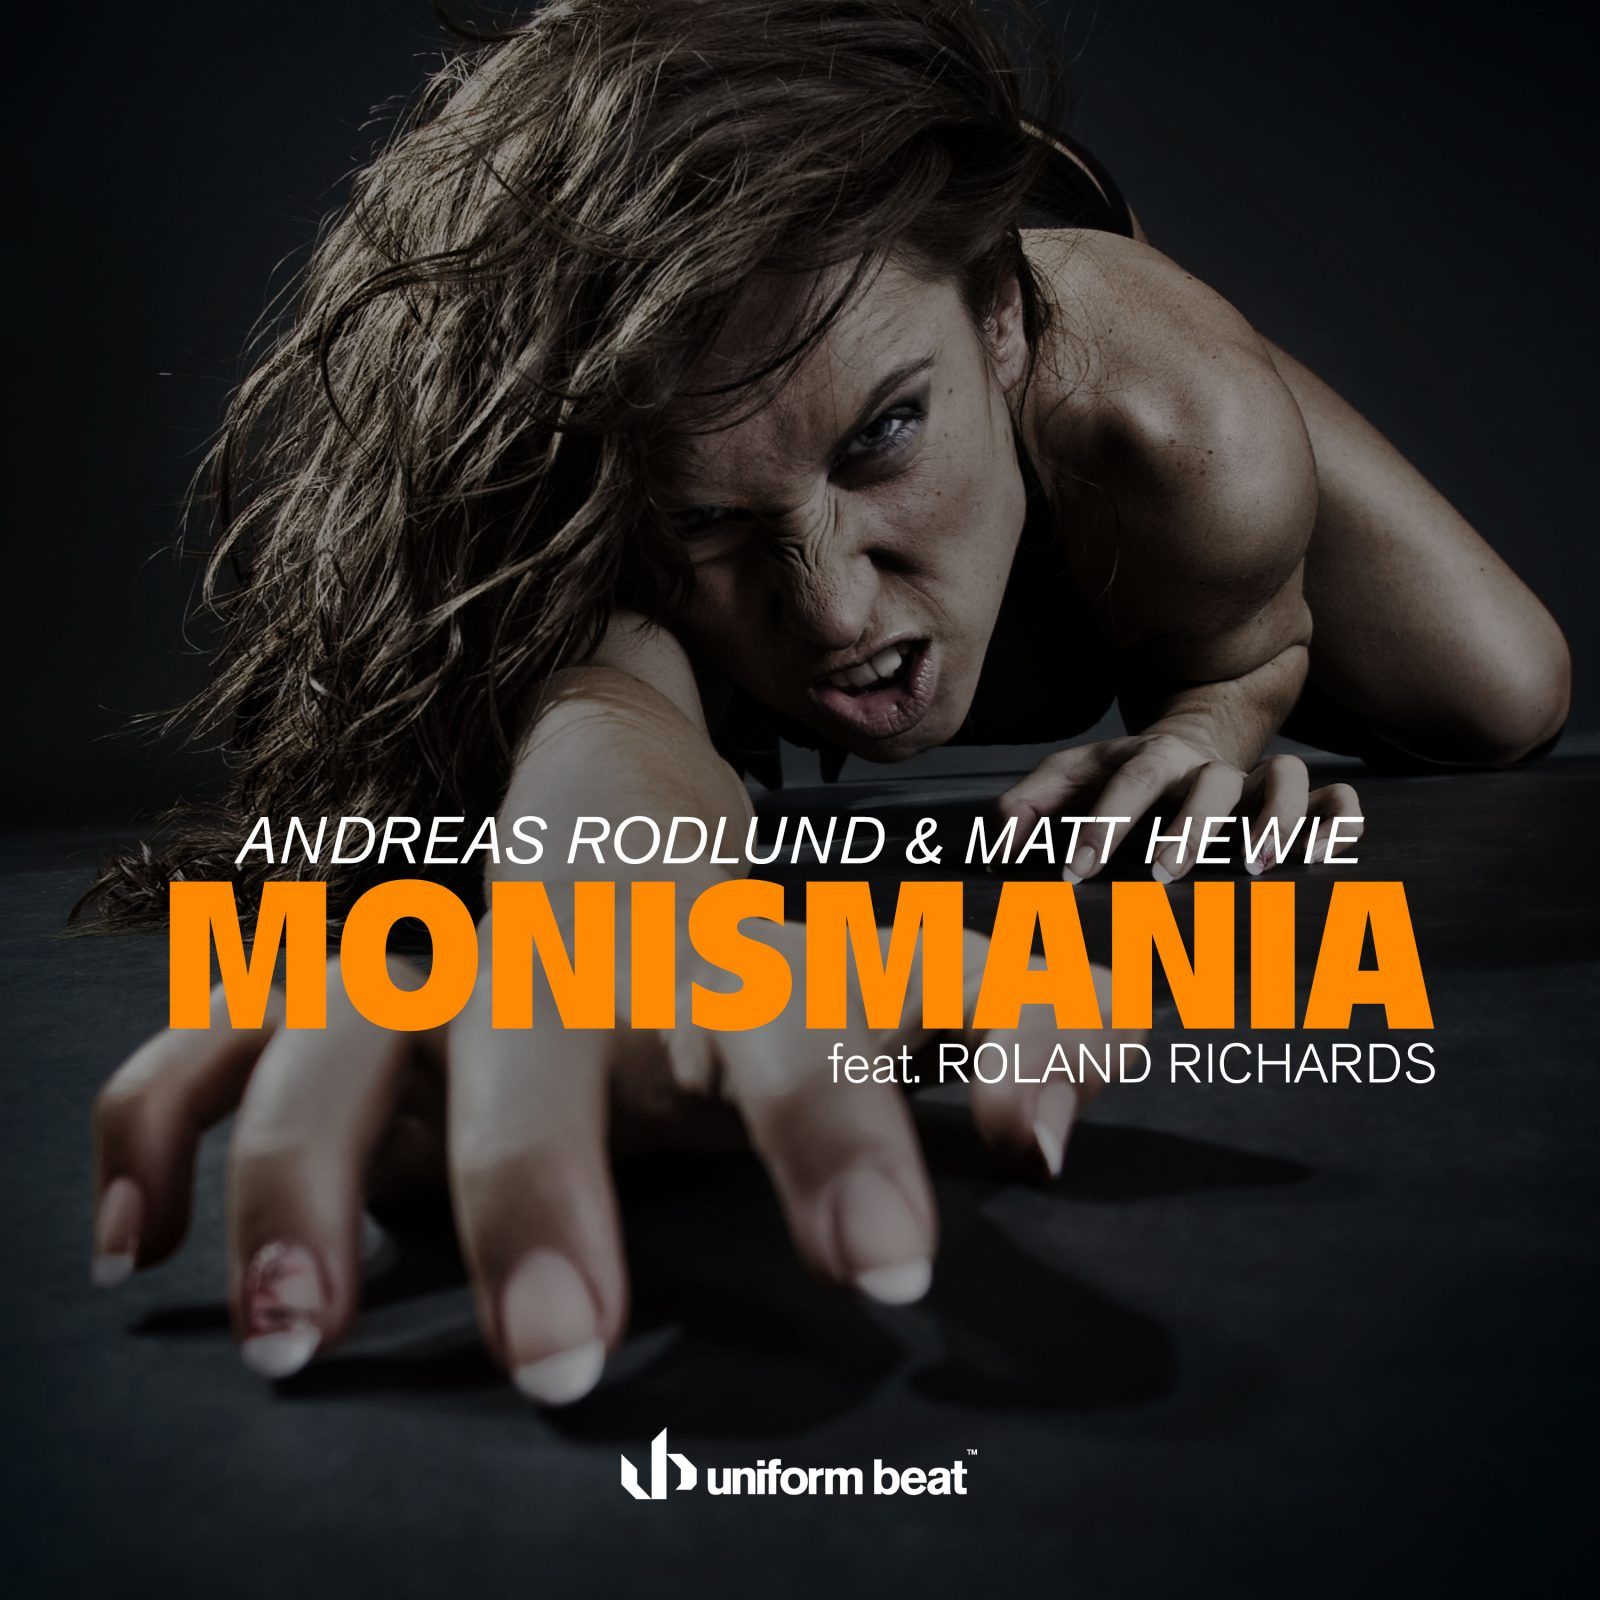 00-andreas-rodlund-matt-hewie-monismania-feat.roland-richards.jpg